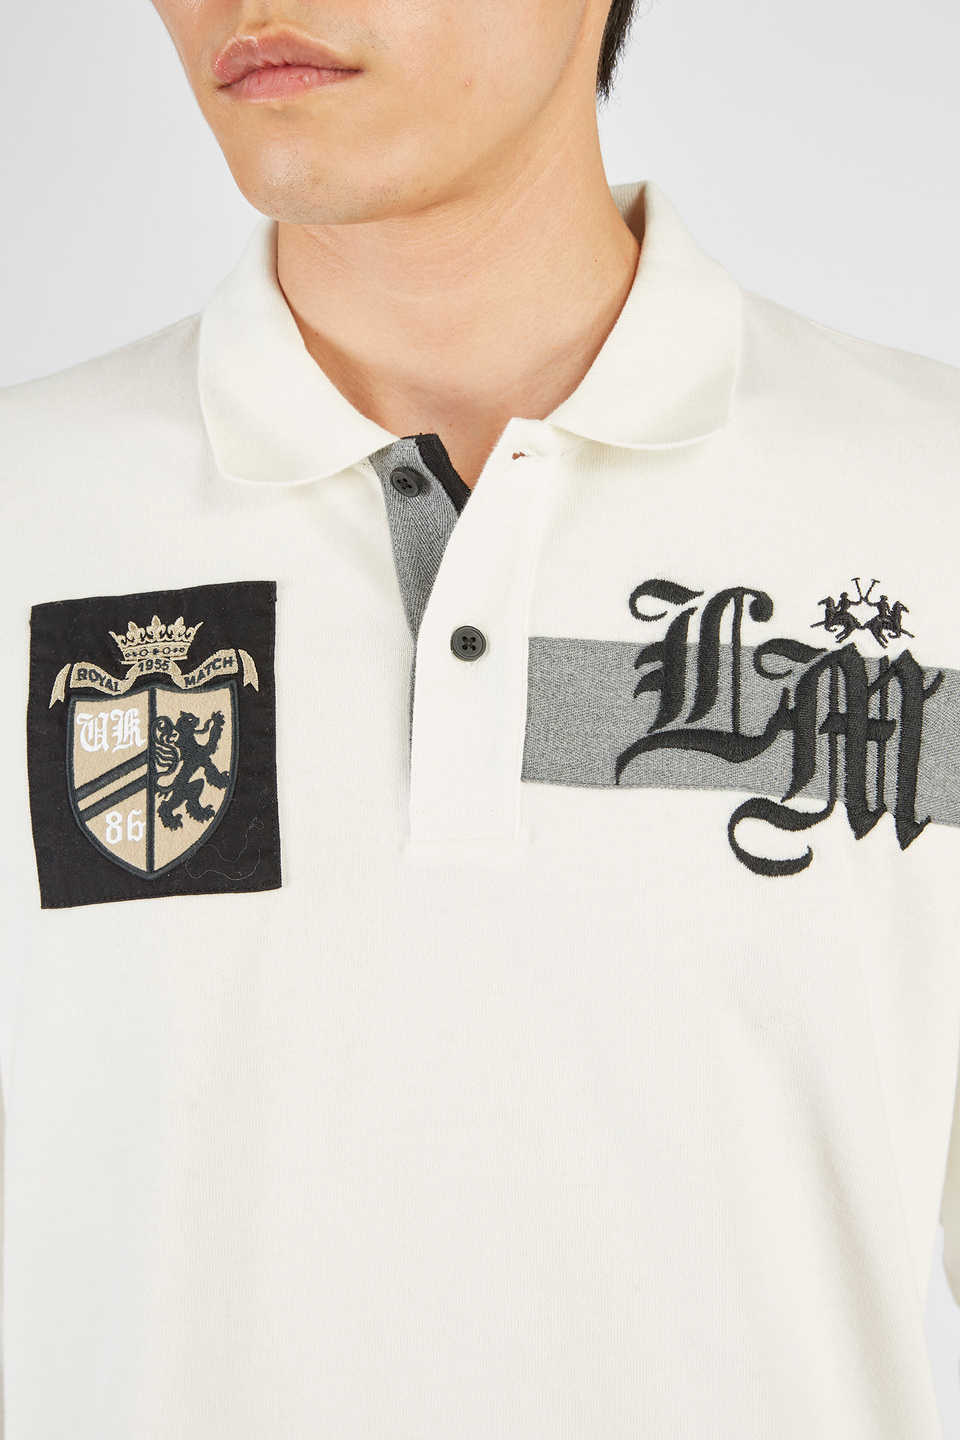 Herren-Poloshirt mit langen Ärmeln aus Jersey-Baumwolle | La Martina - Official Online Shop